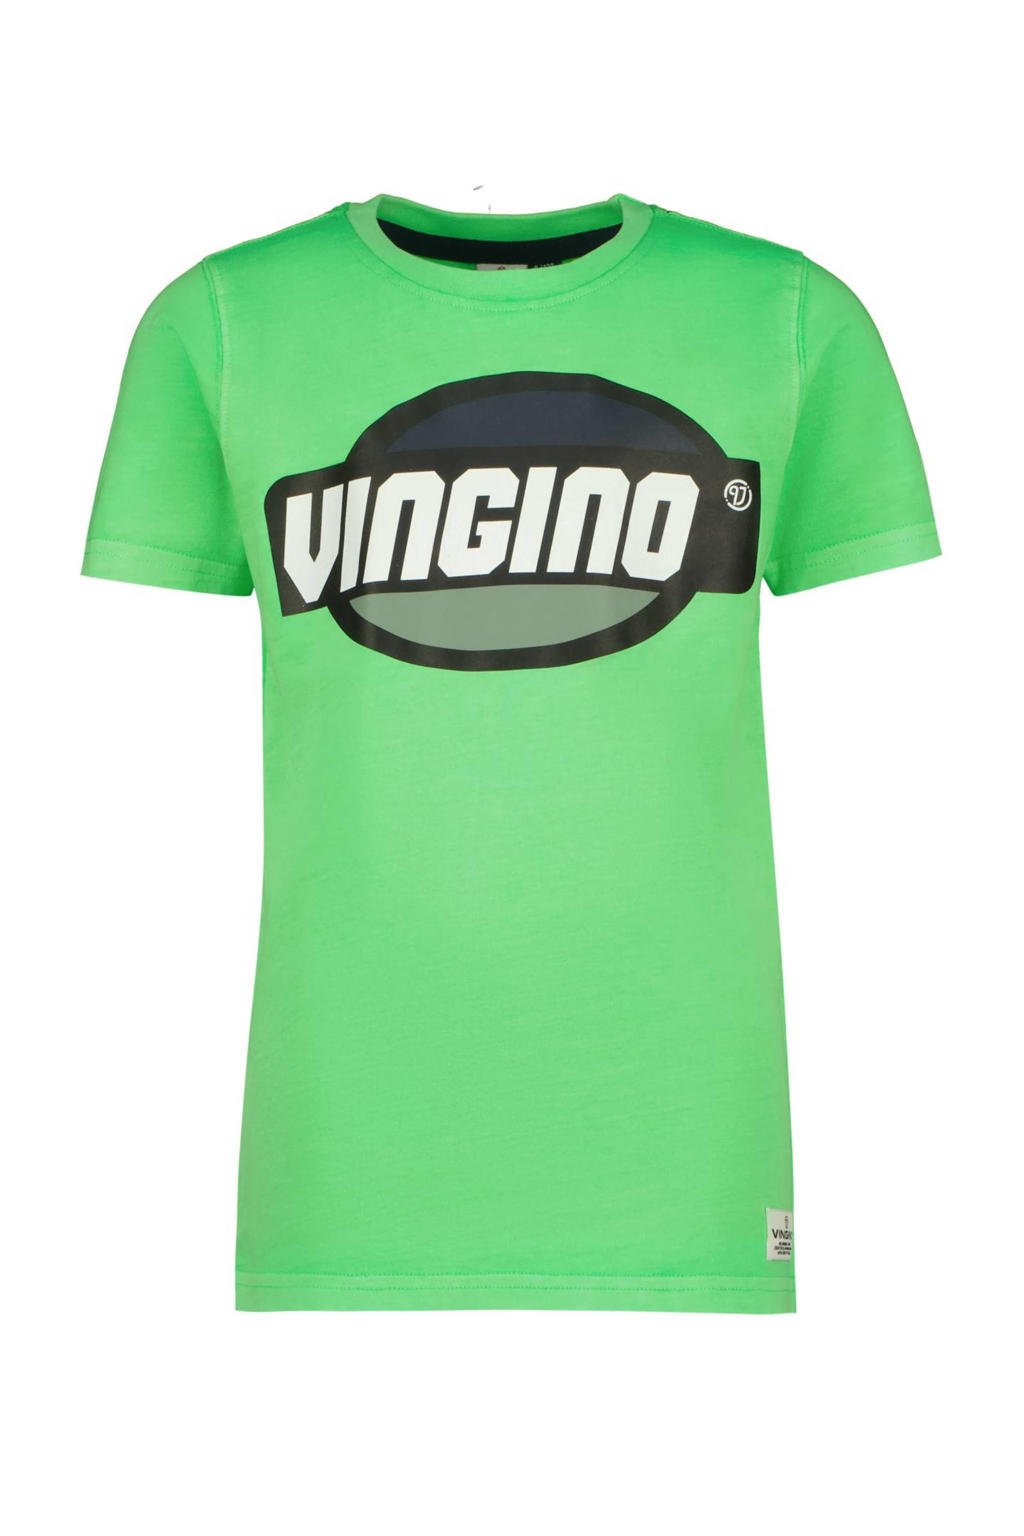 Groene jongens Vingino T-shirt van katoen met logo dessin, korte mouwen en ronde hals